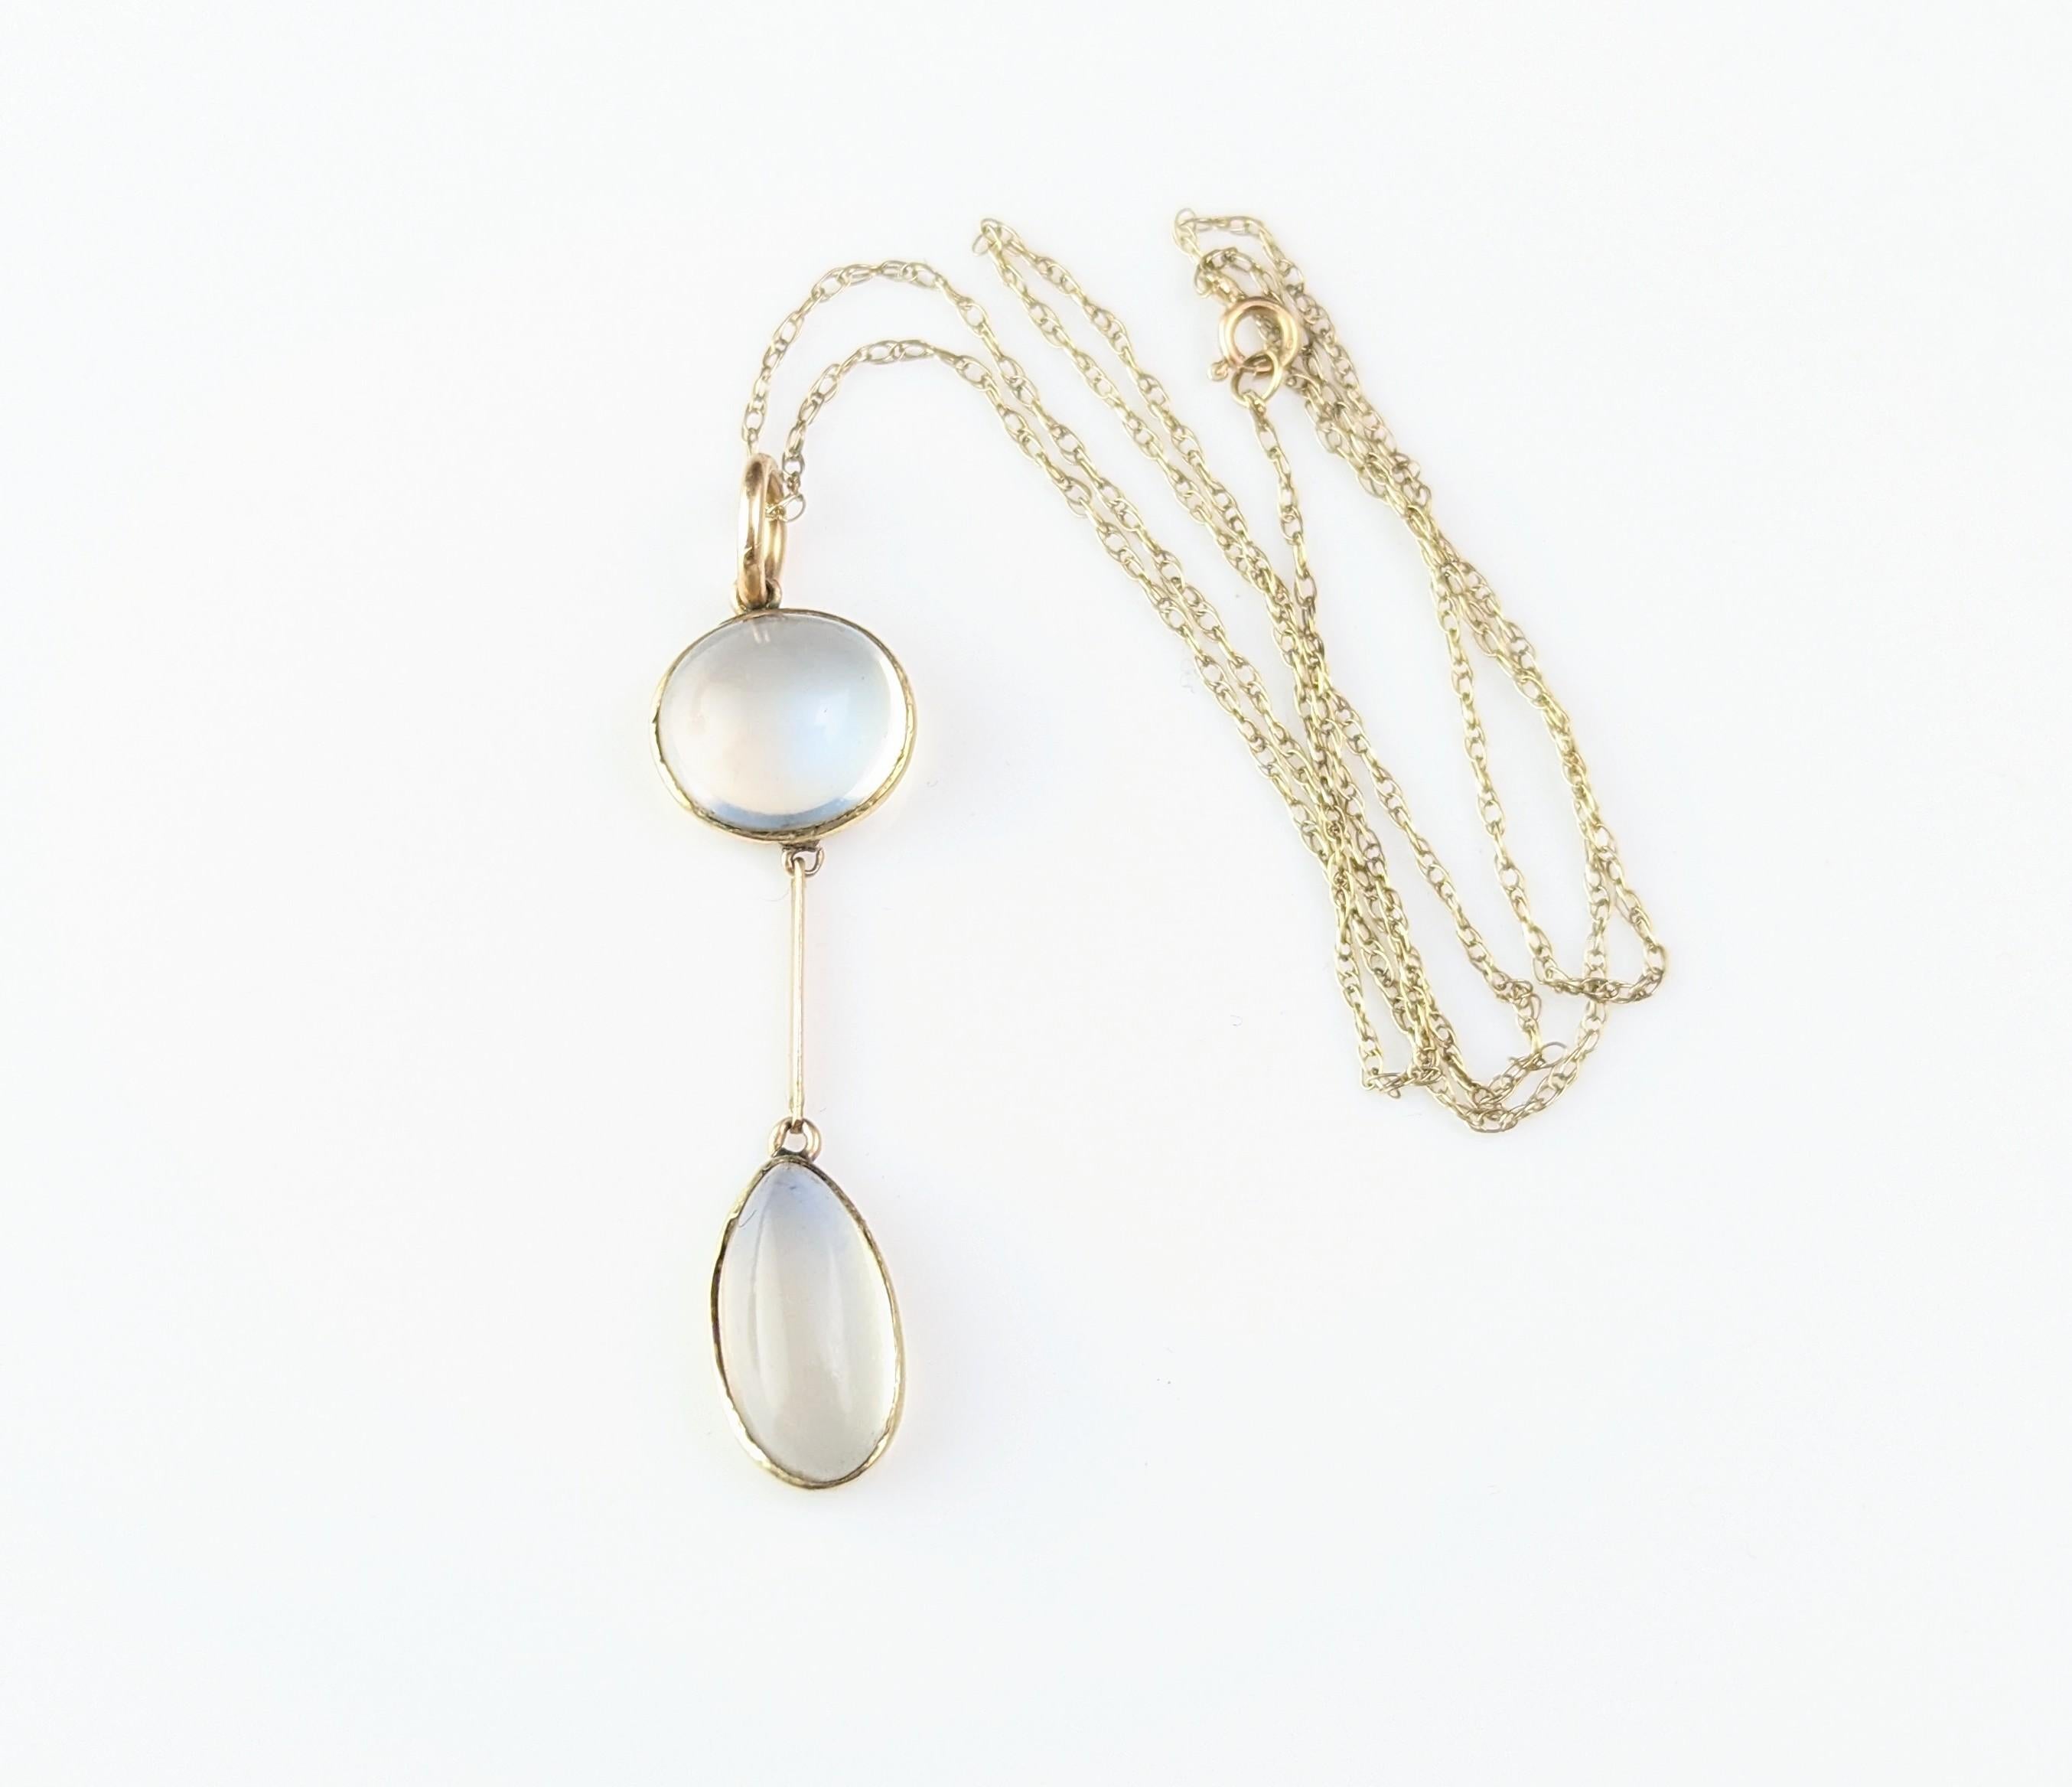 Antique Art Deco Moonstone pendant necklace, 9k gold  5